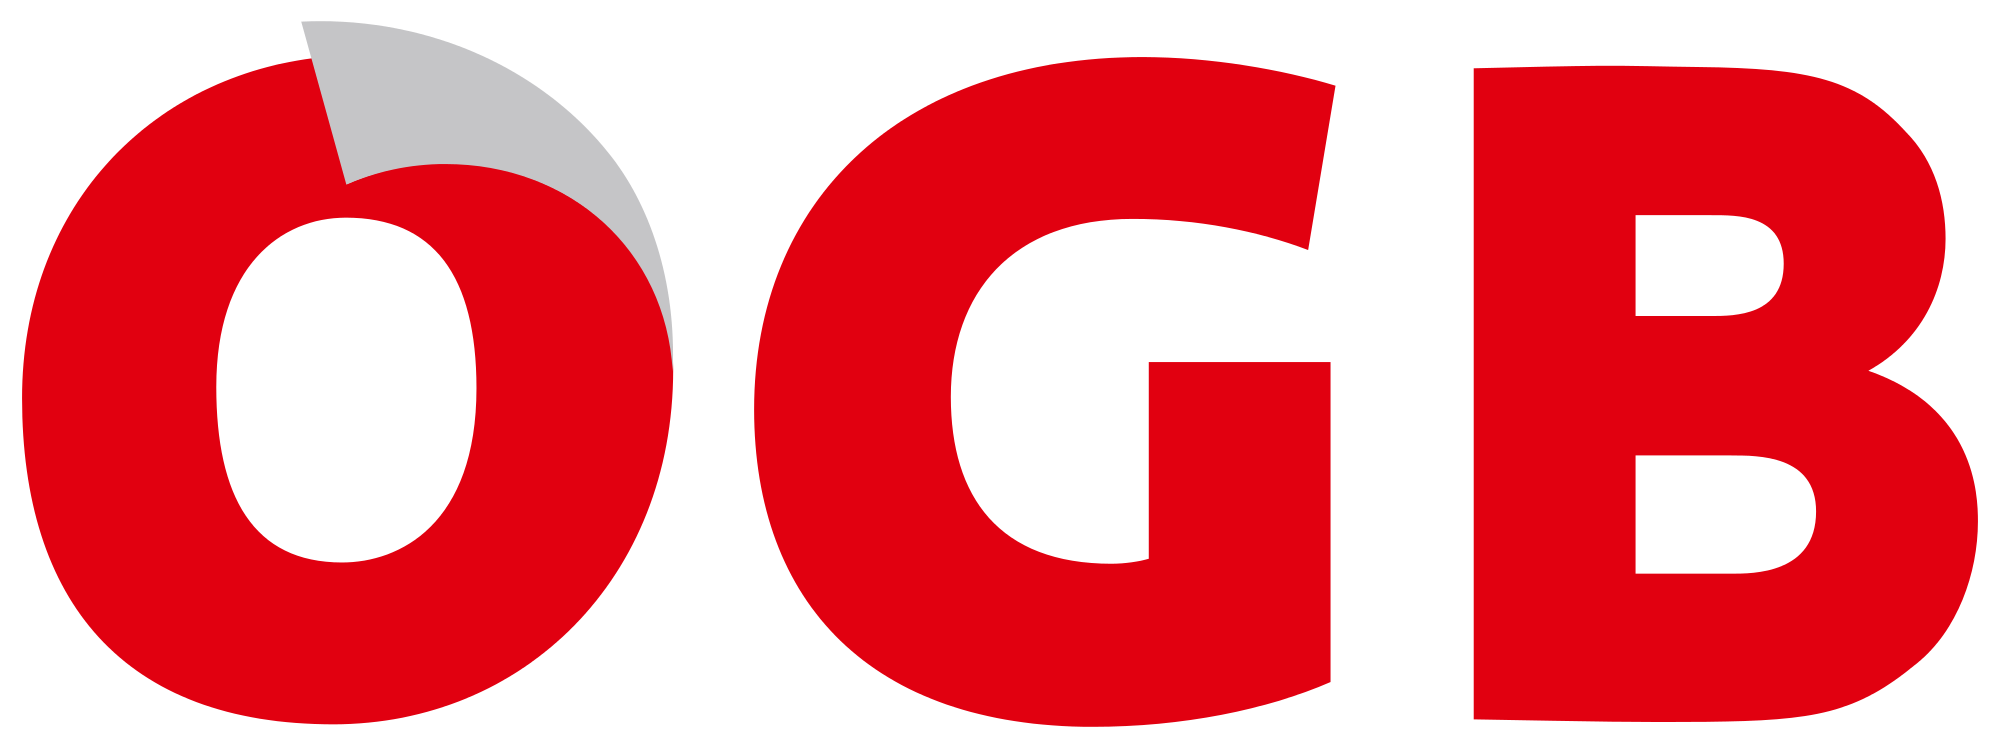 Österreichischer_Gewerkschaftsbund_logo.svg.png